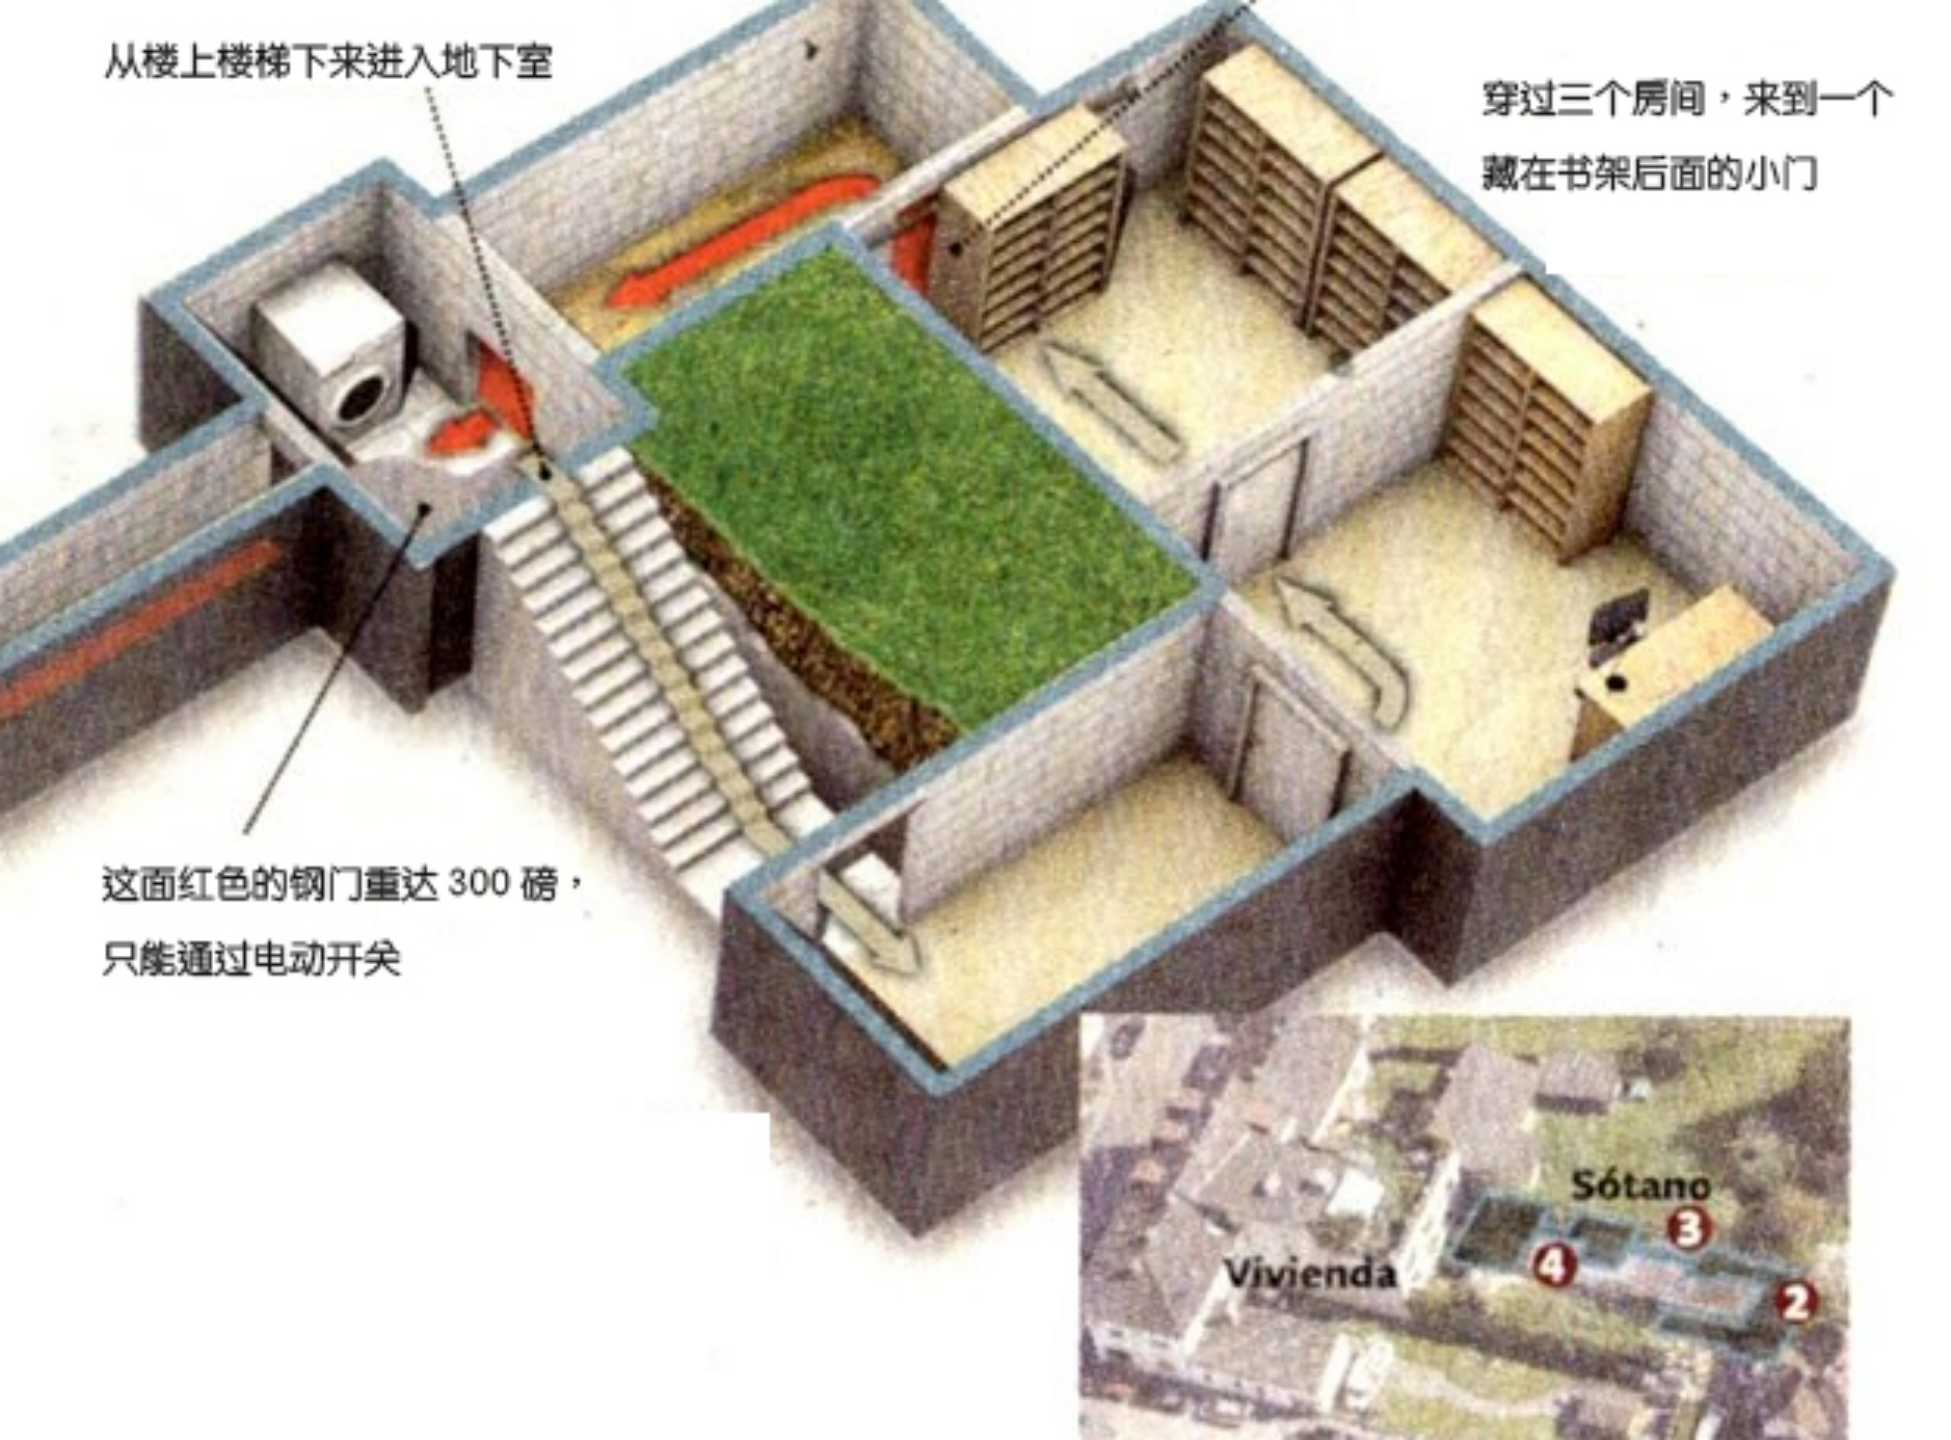 图 3：地下室结构图